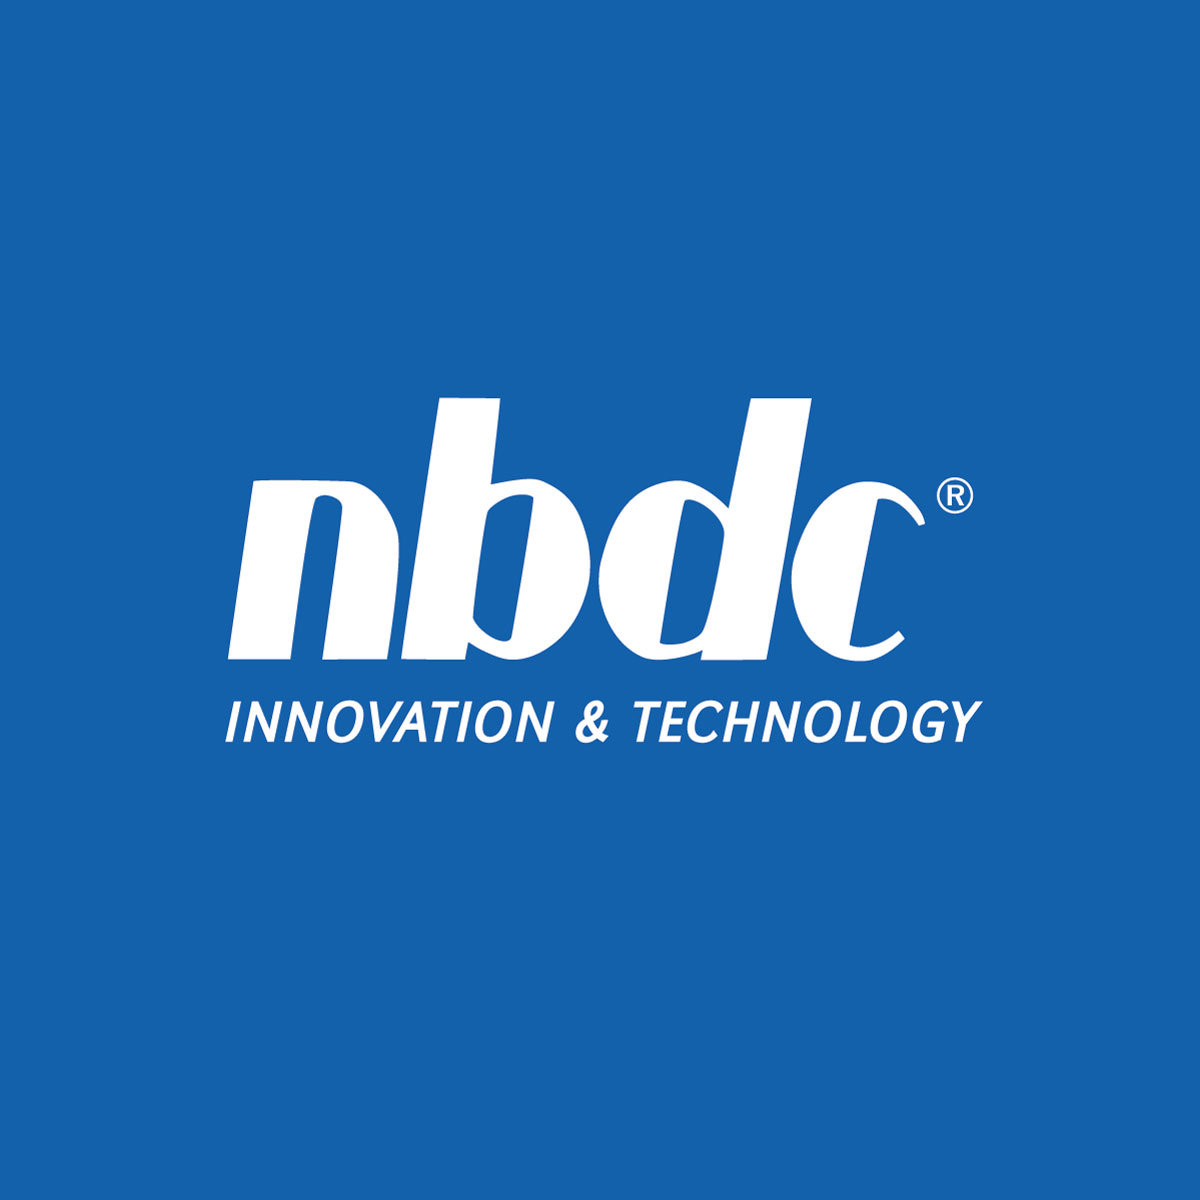 nbdc-innovation-sq.jpg